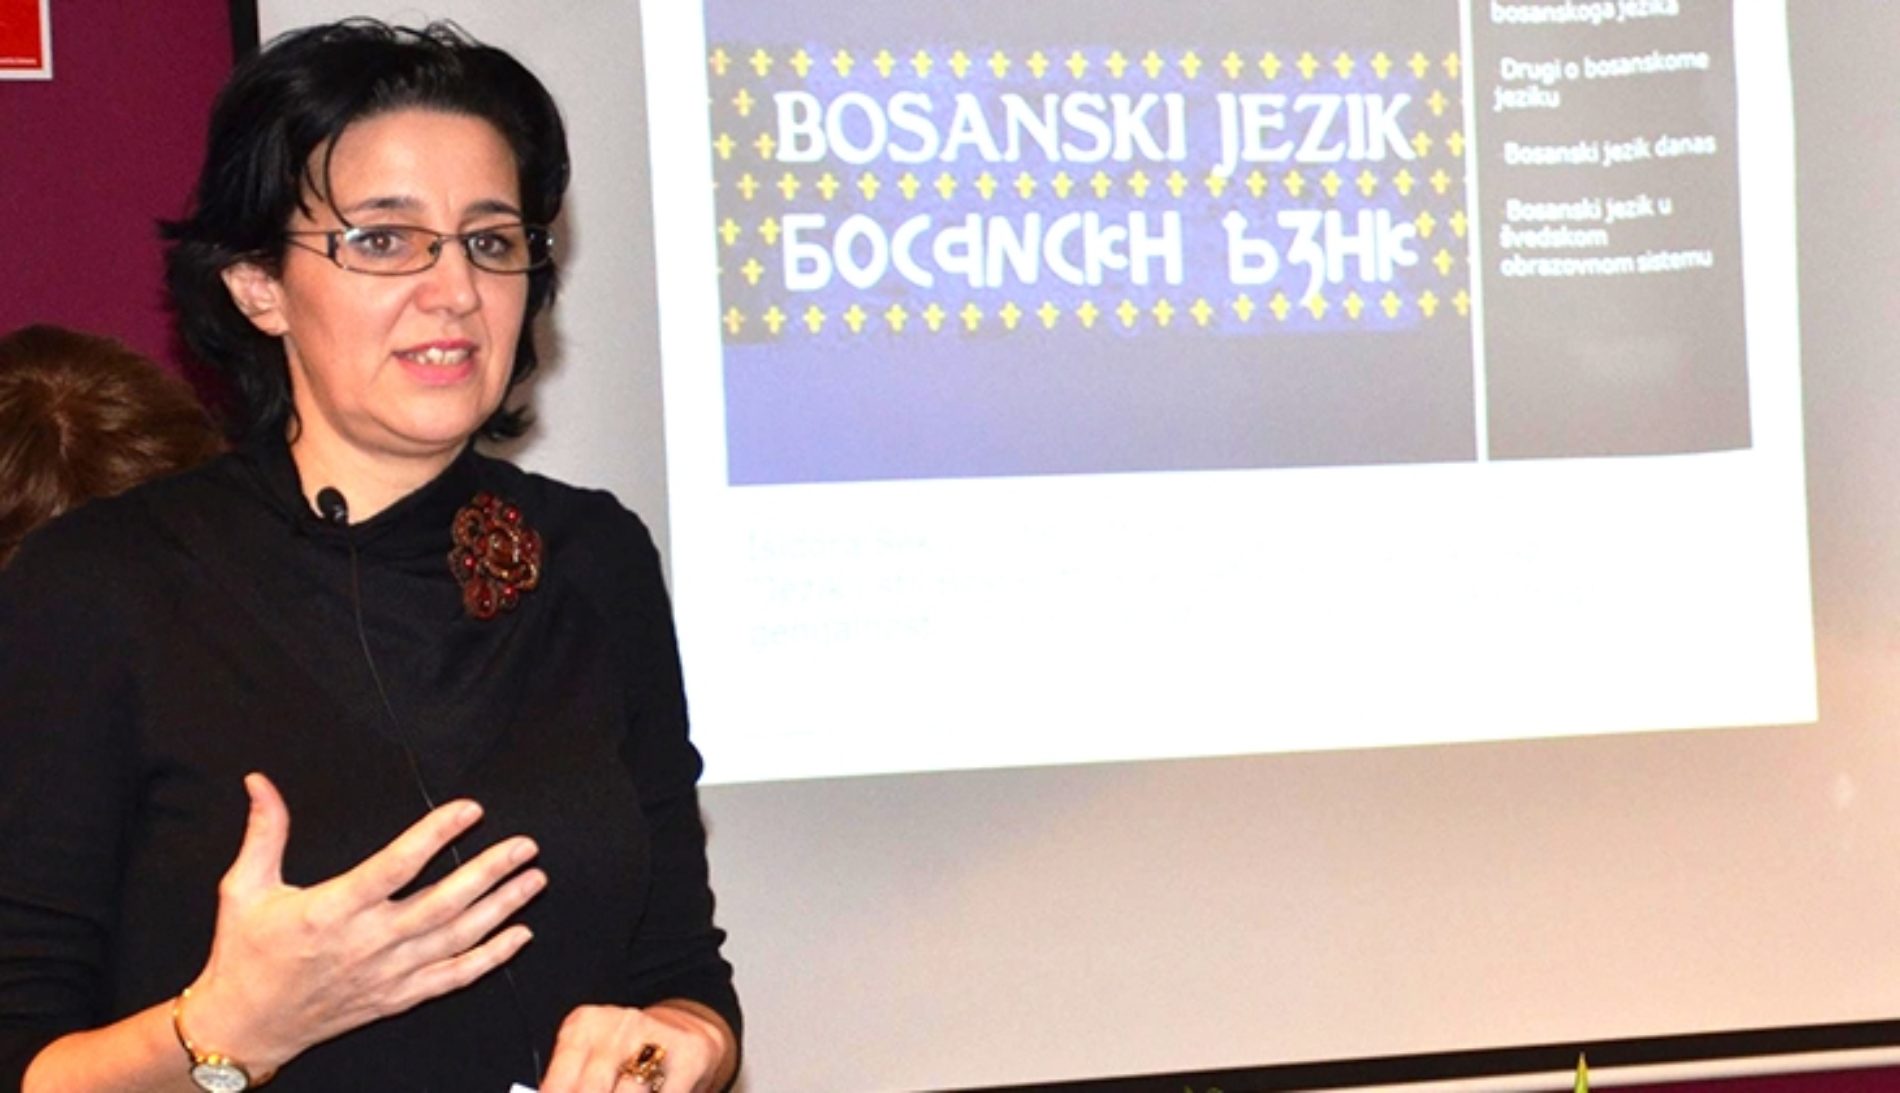 Obilježavanje Dana maternjeg jezika u Geteborgu: ”Mi govorimo bosanski/Vi talar bosniska”